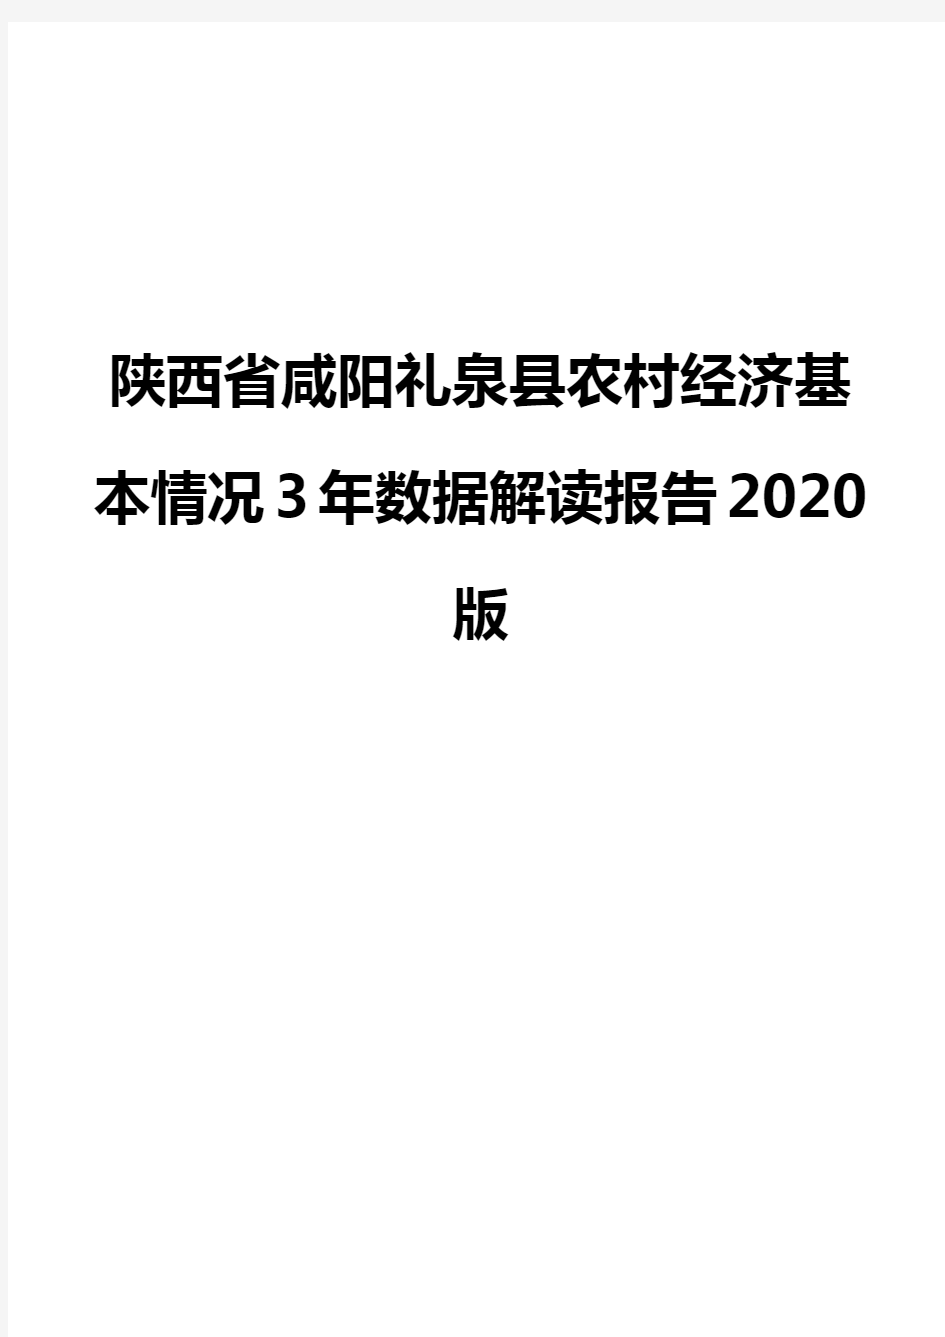 陕西省咸阳礼泉县农村经济基本情况3年数据解读报告2020版